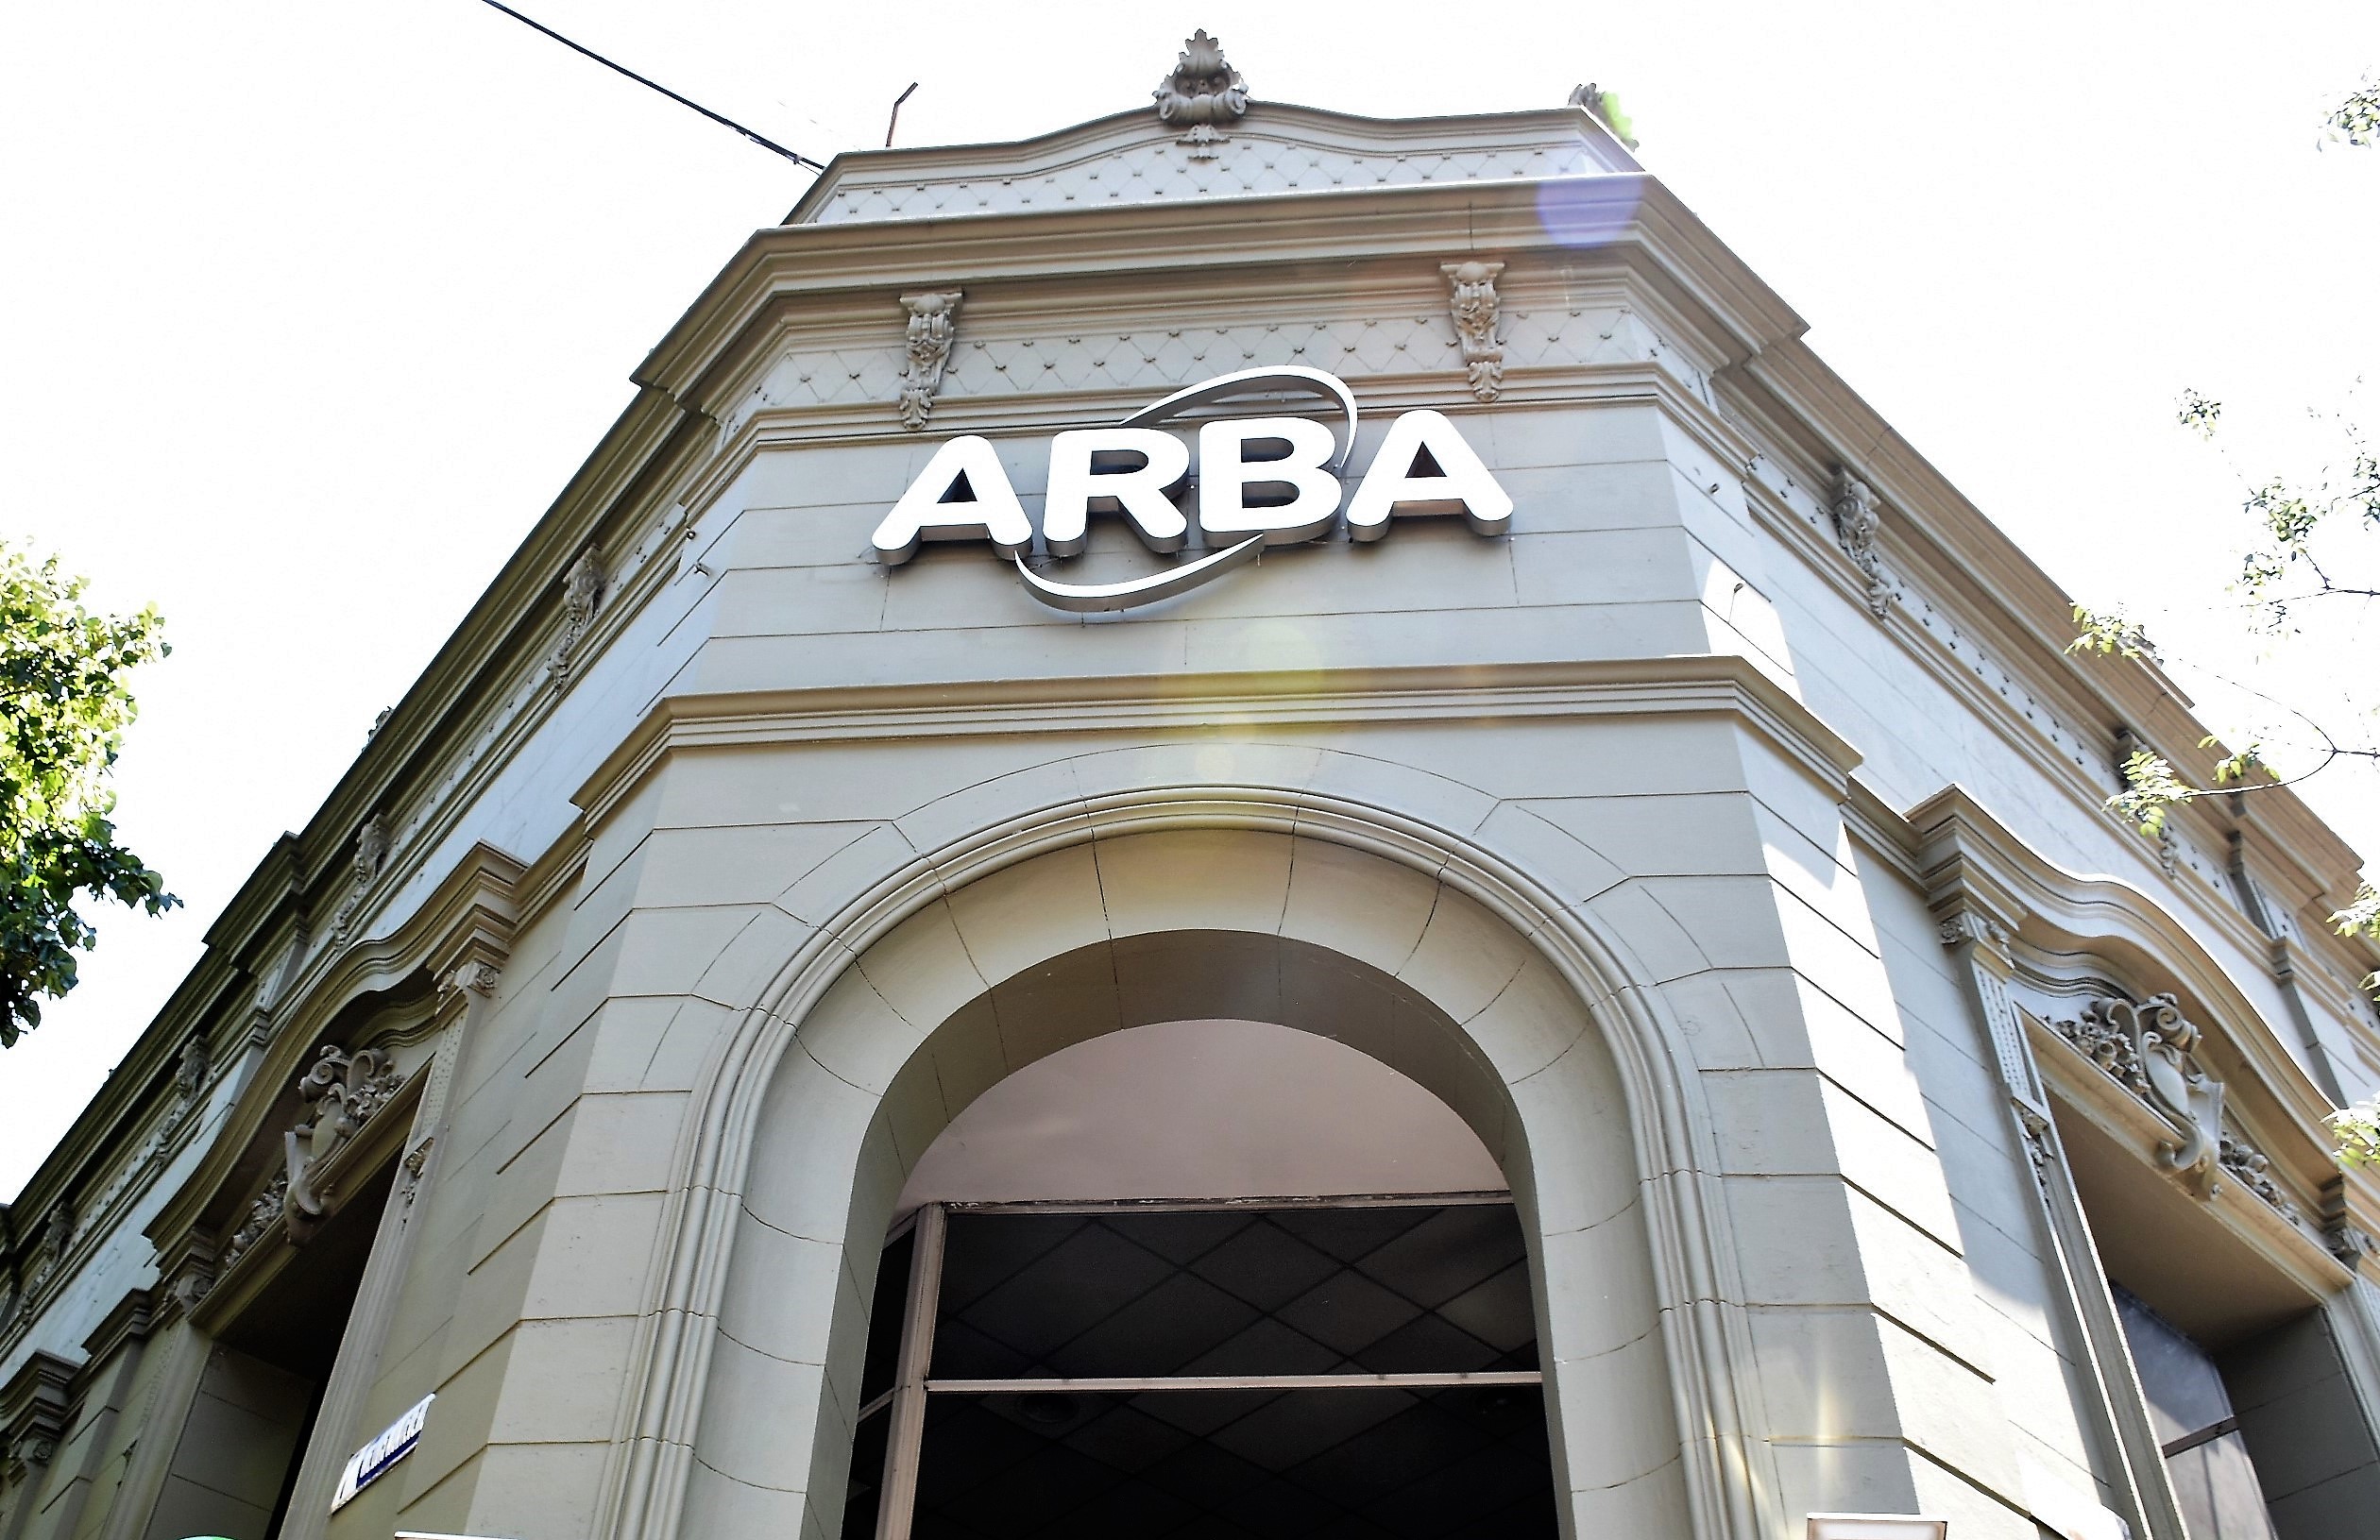 ARBA prorrogó la suspensión de embargos hasta fin de año